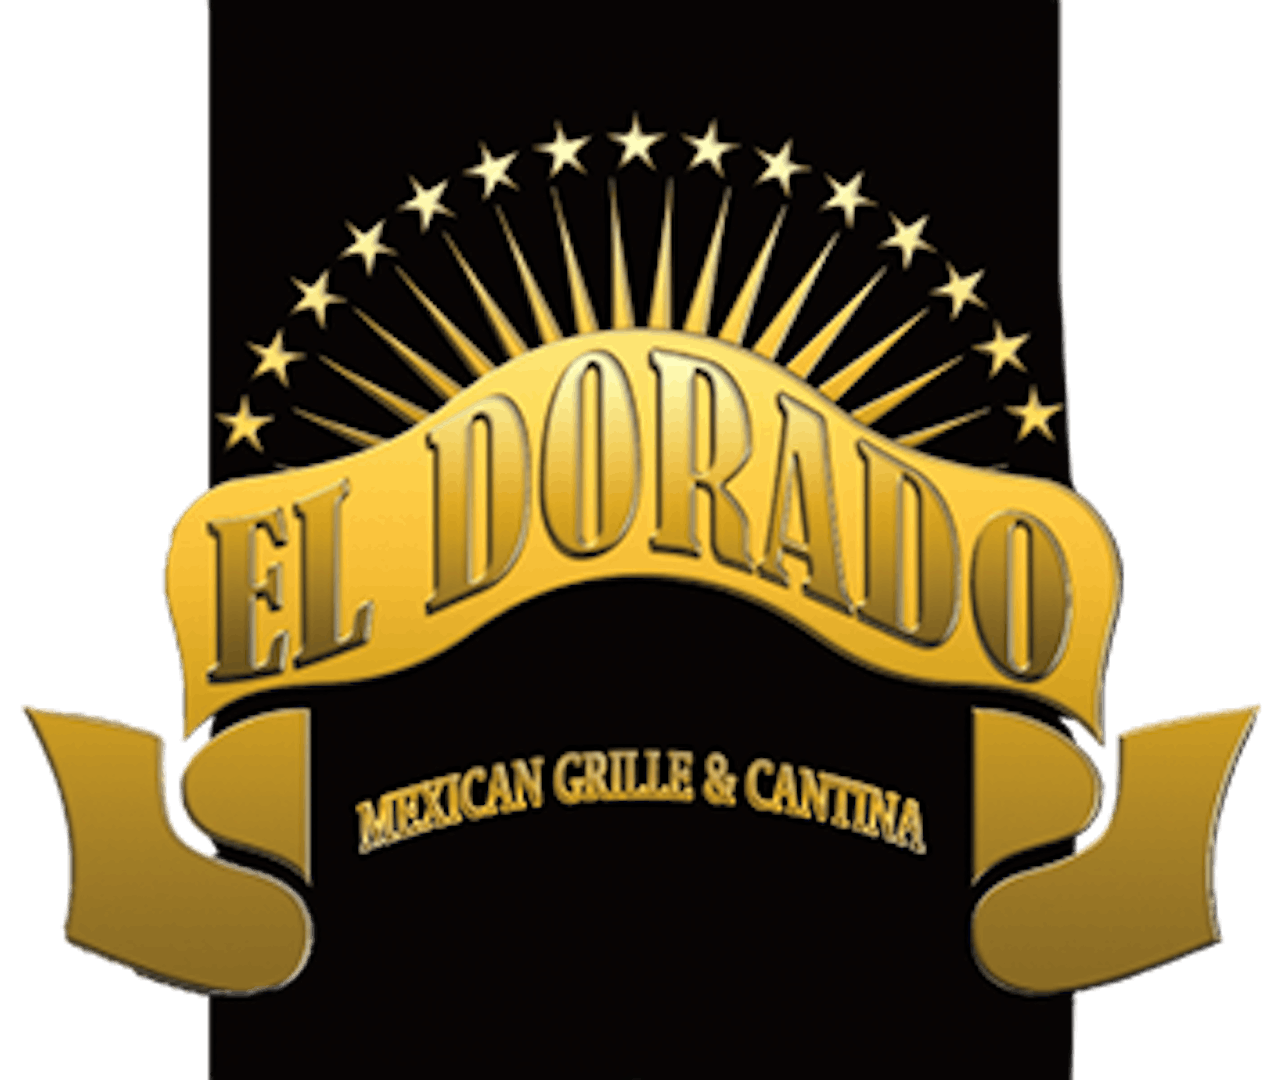 El Dorado Mexican Grille